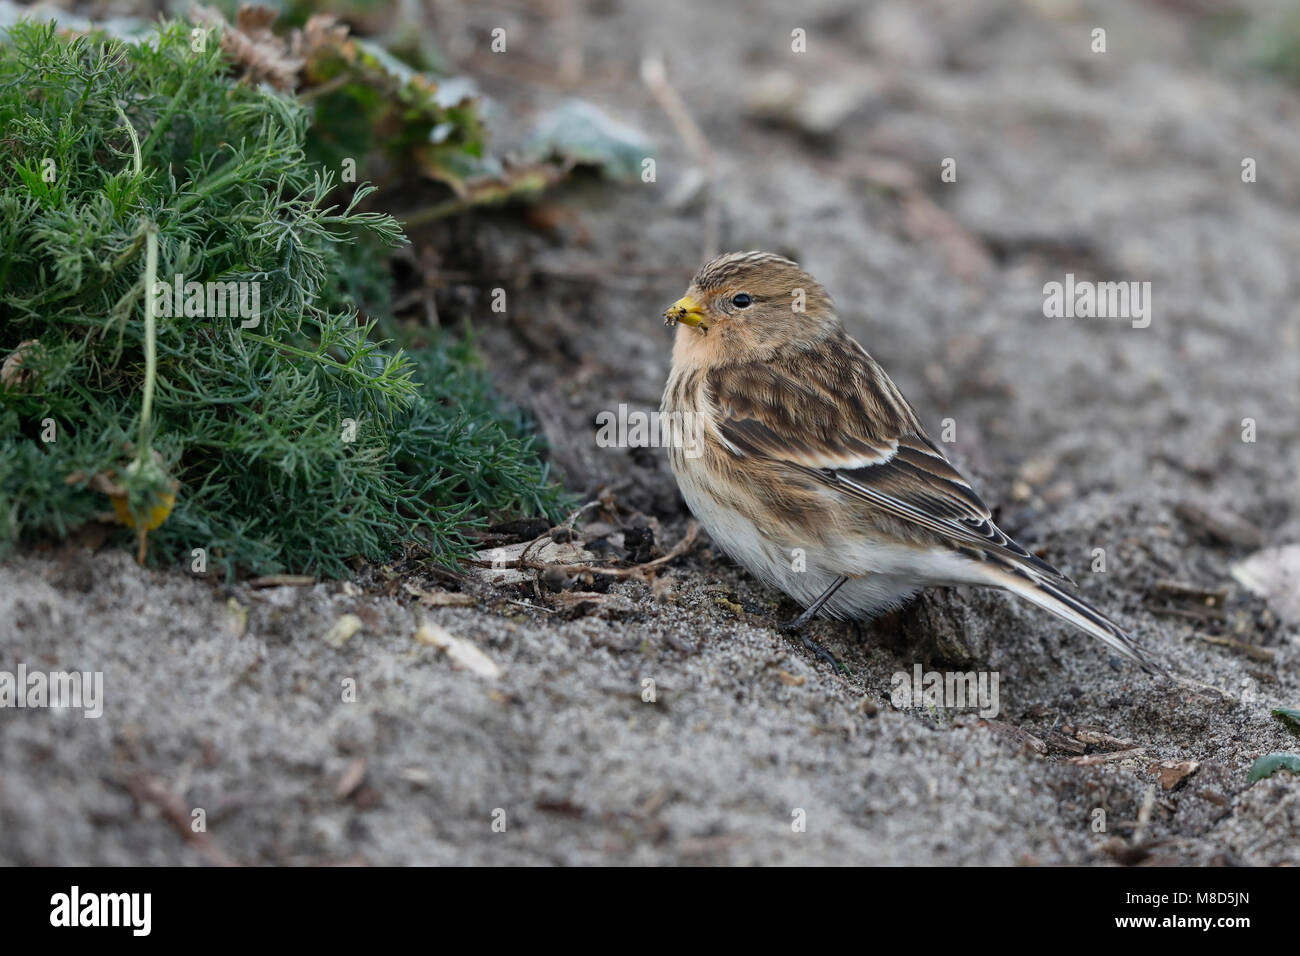 Bird image from Chris van Rijswijk Stock Photo